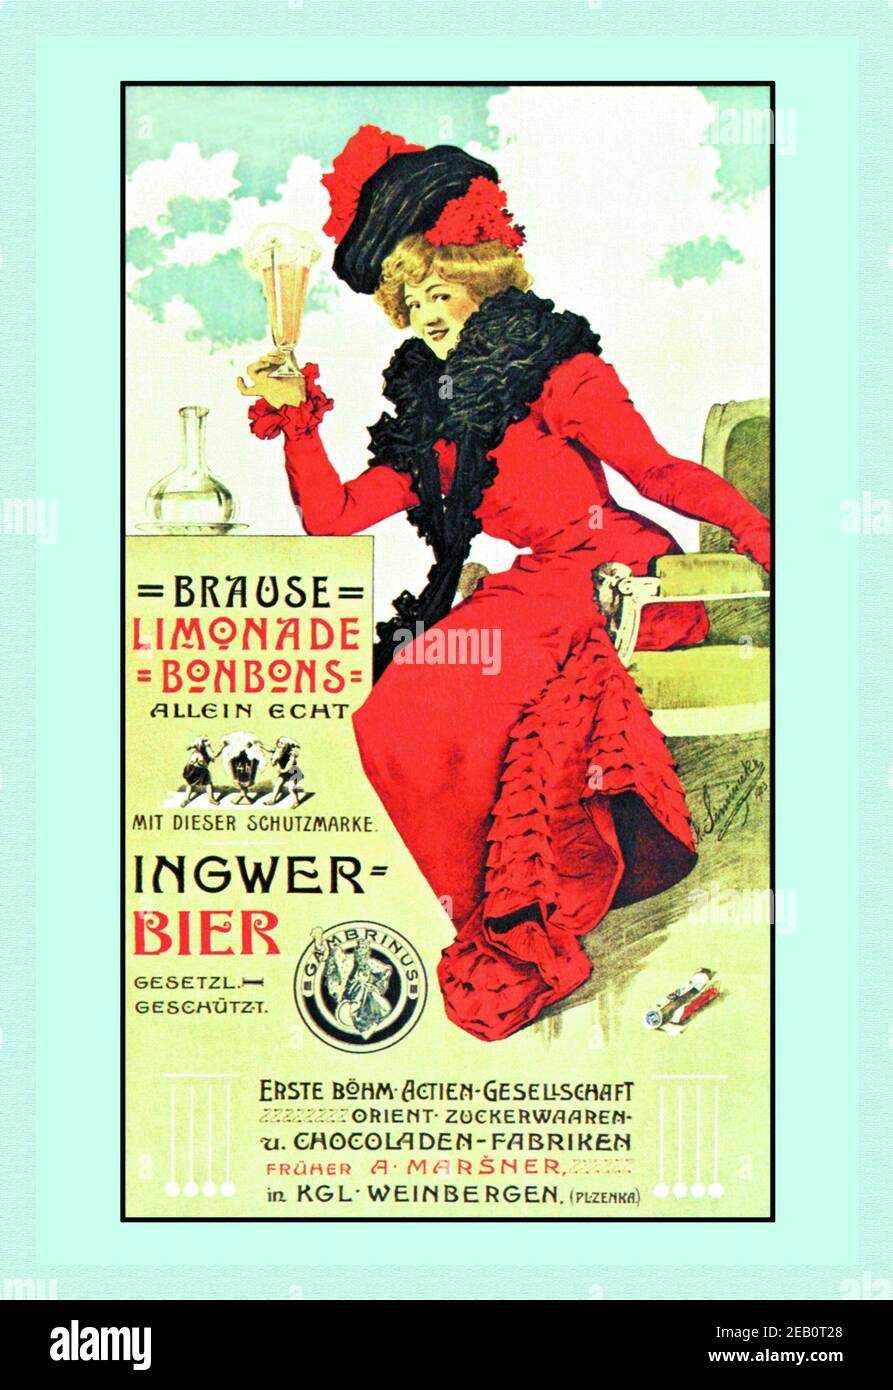 Ingwer Bier 1900 Stock Photo